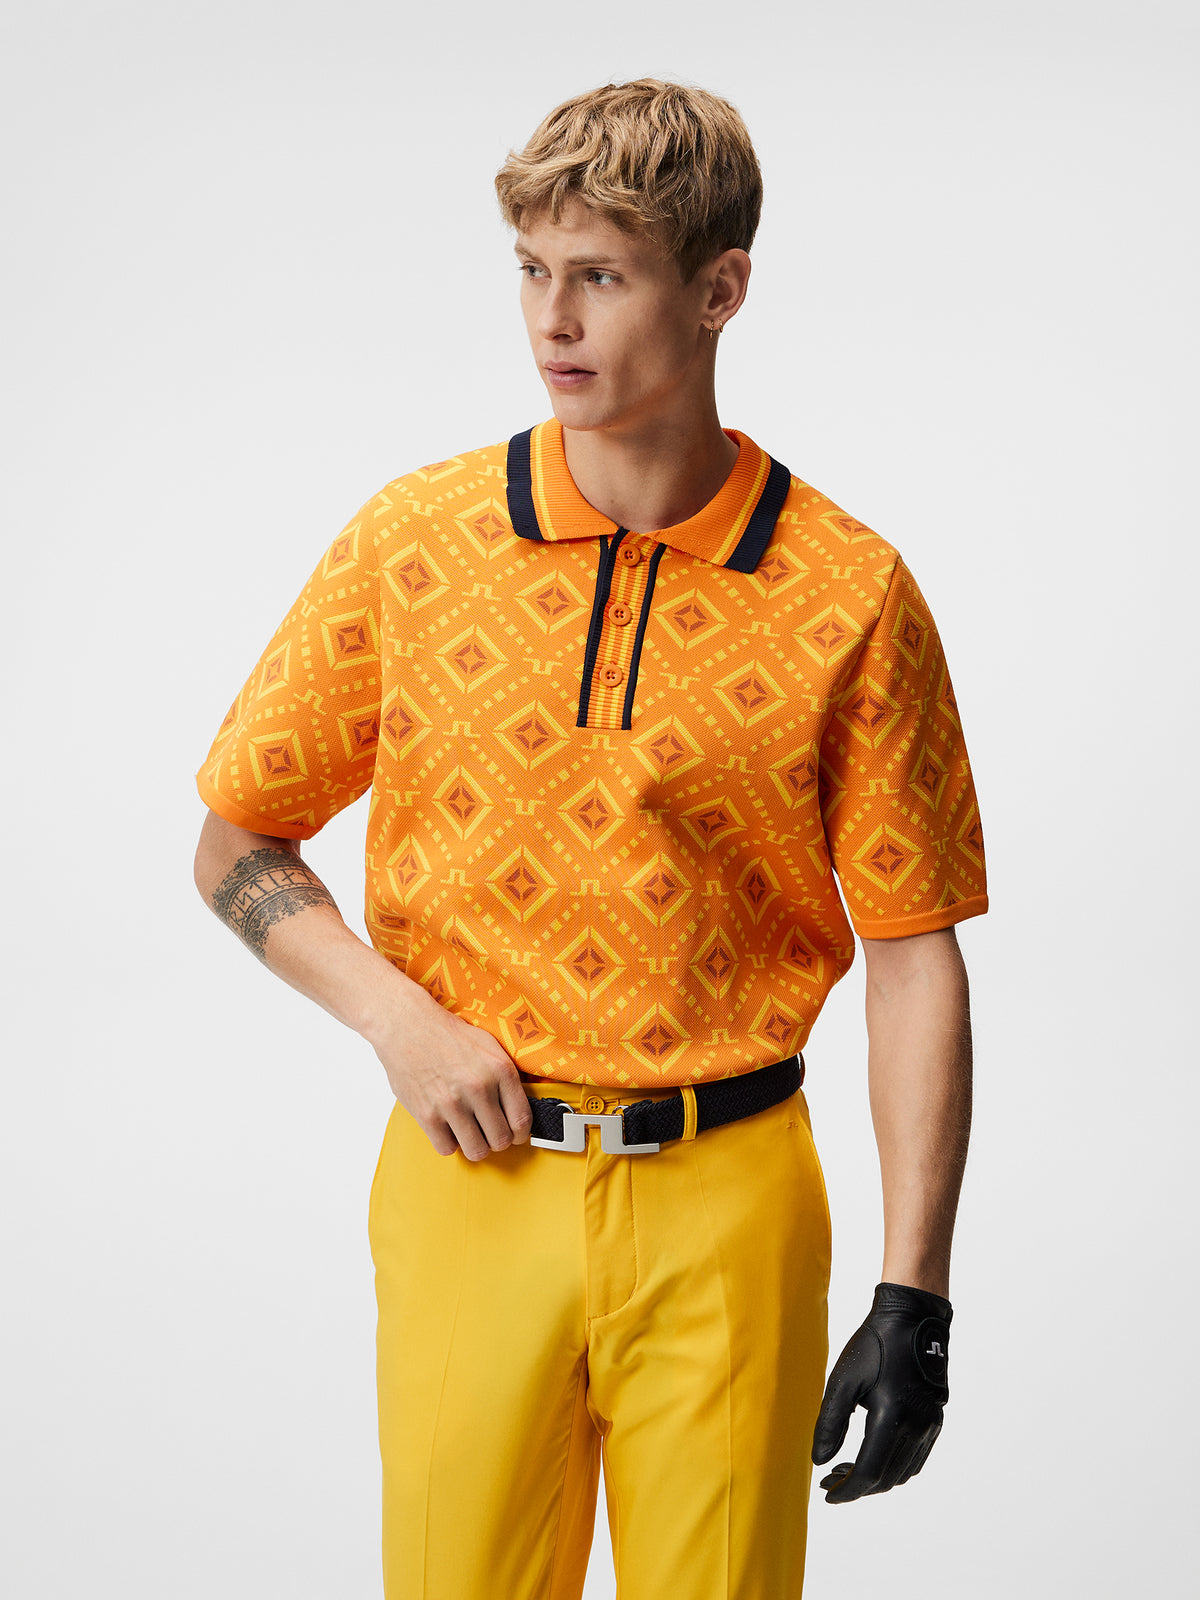 Cane Knitted Shirt / Orange Diamond logo